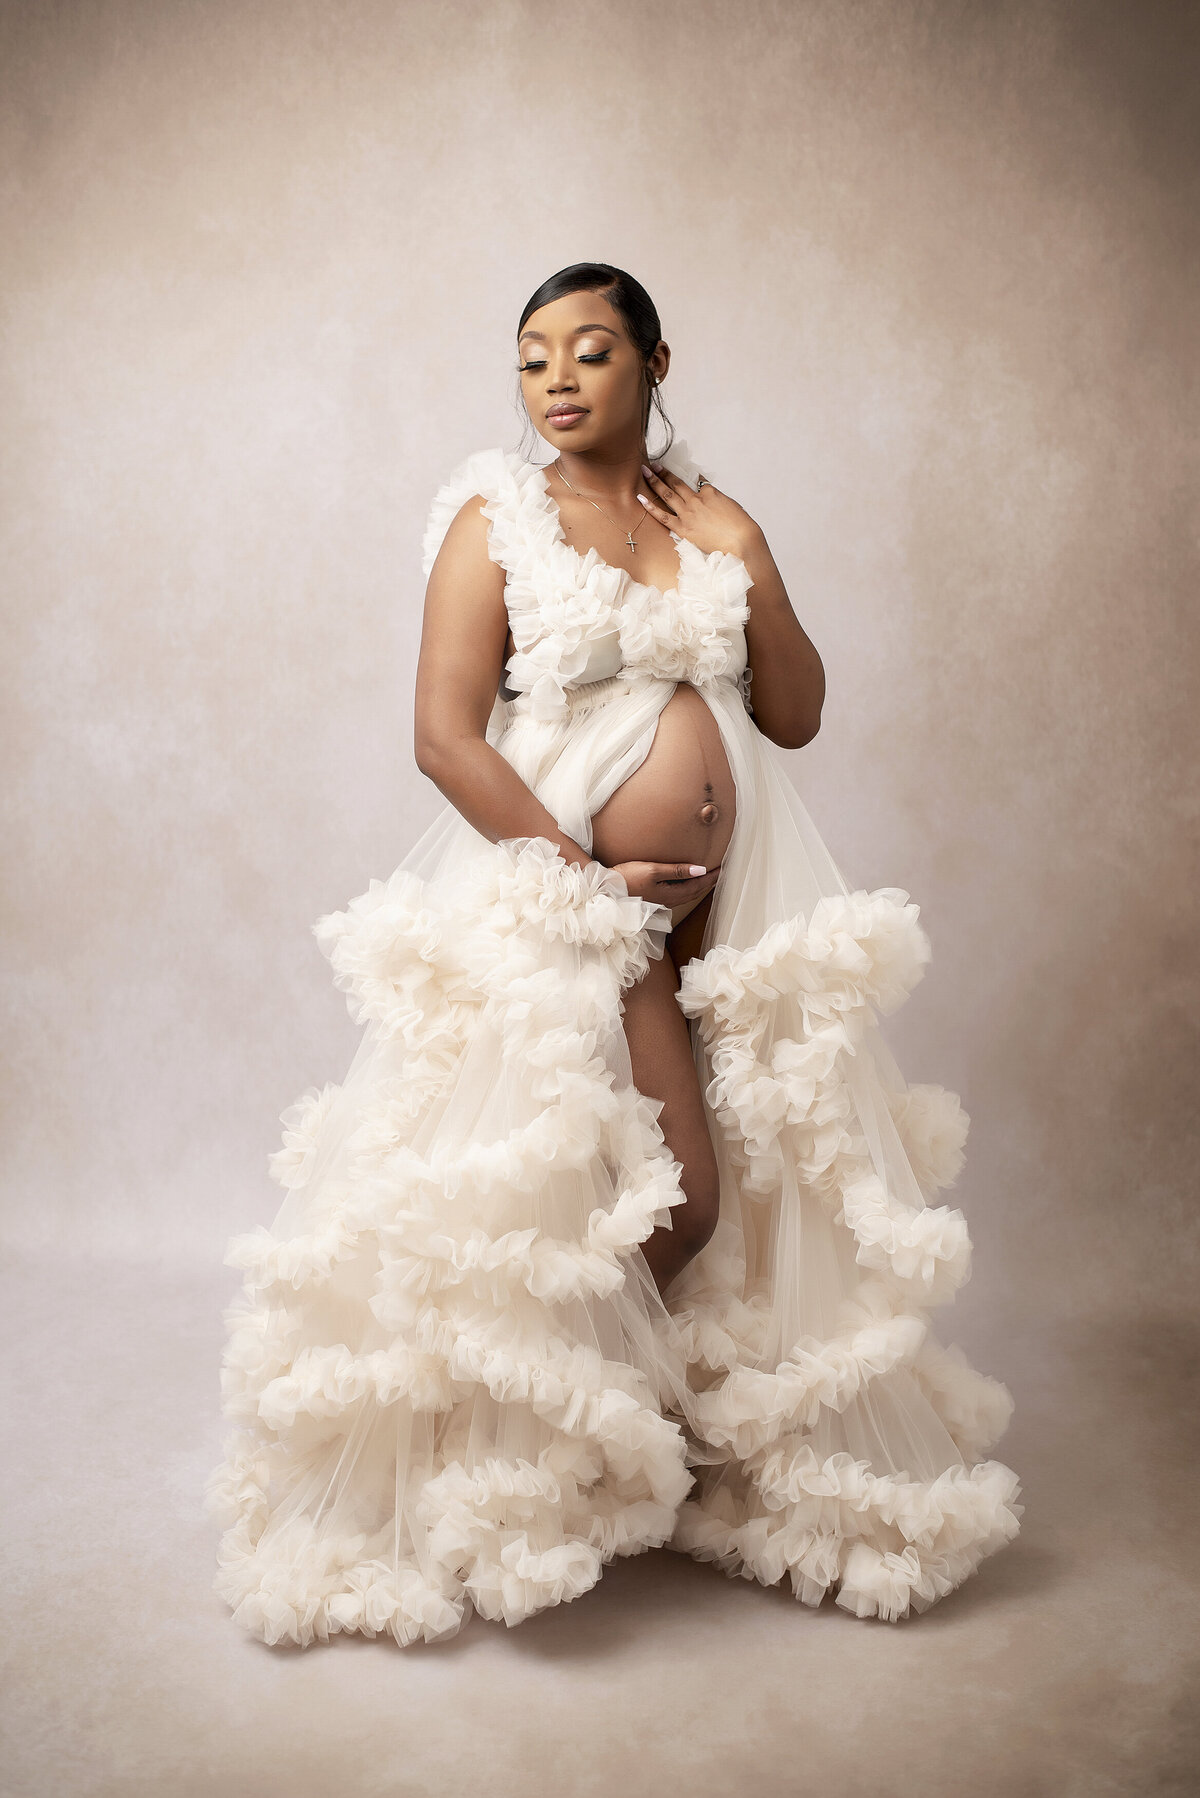 Maternity photo of woman wearing white